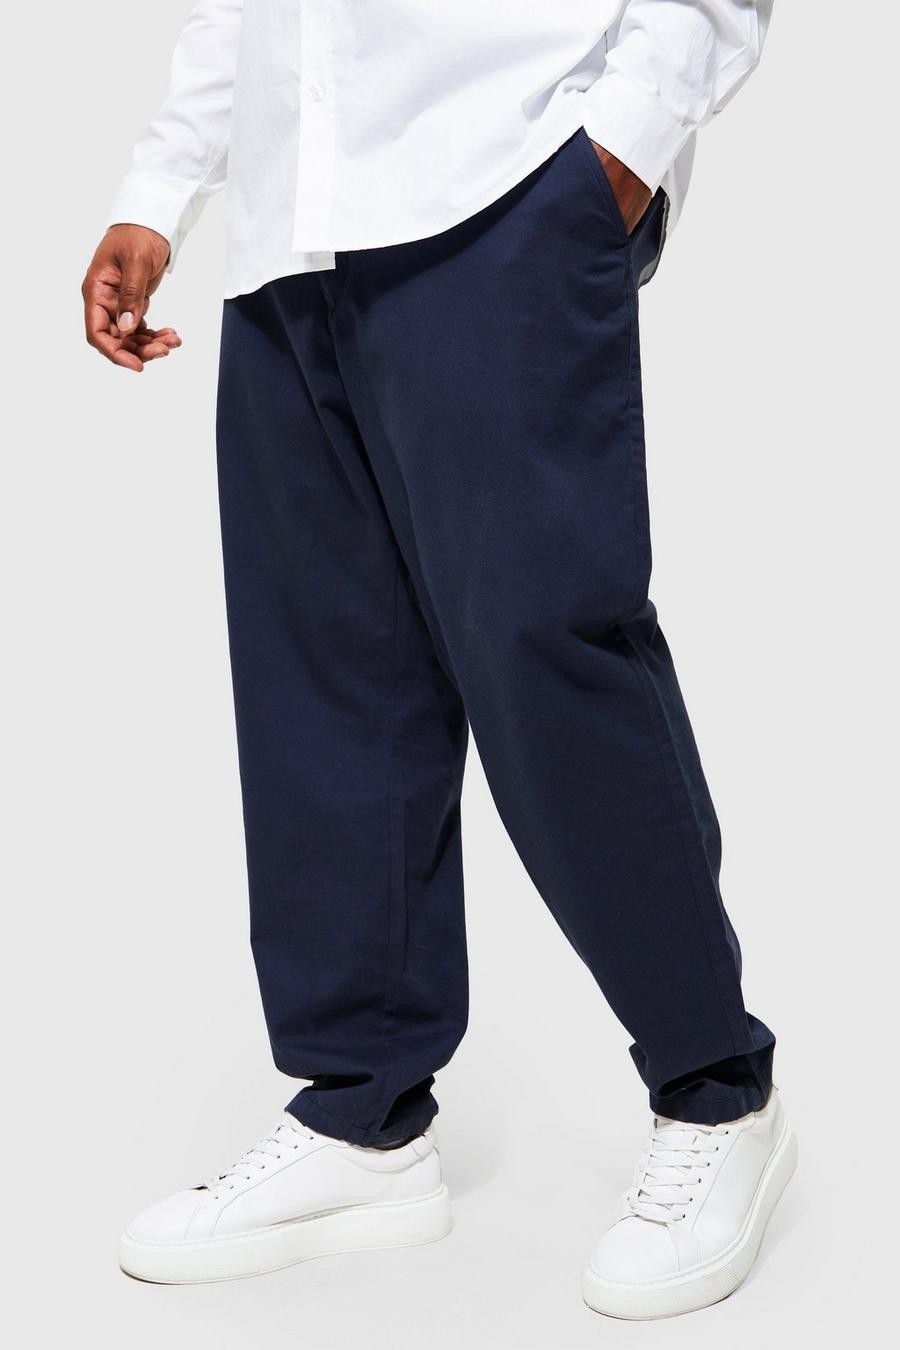 Pantalón Plus chino ajustado, Navy azul marino